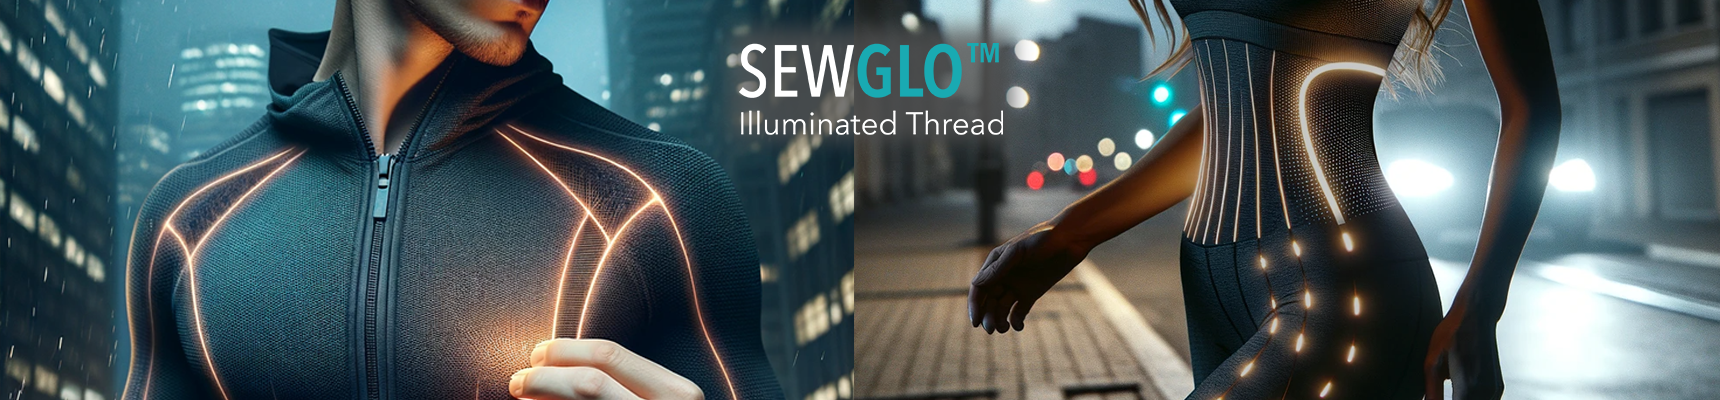 SewGlo™ Illuminated Thread